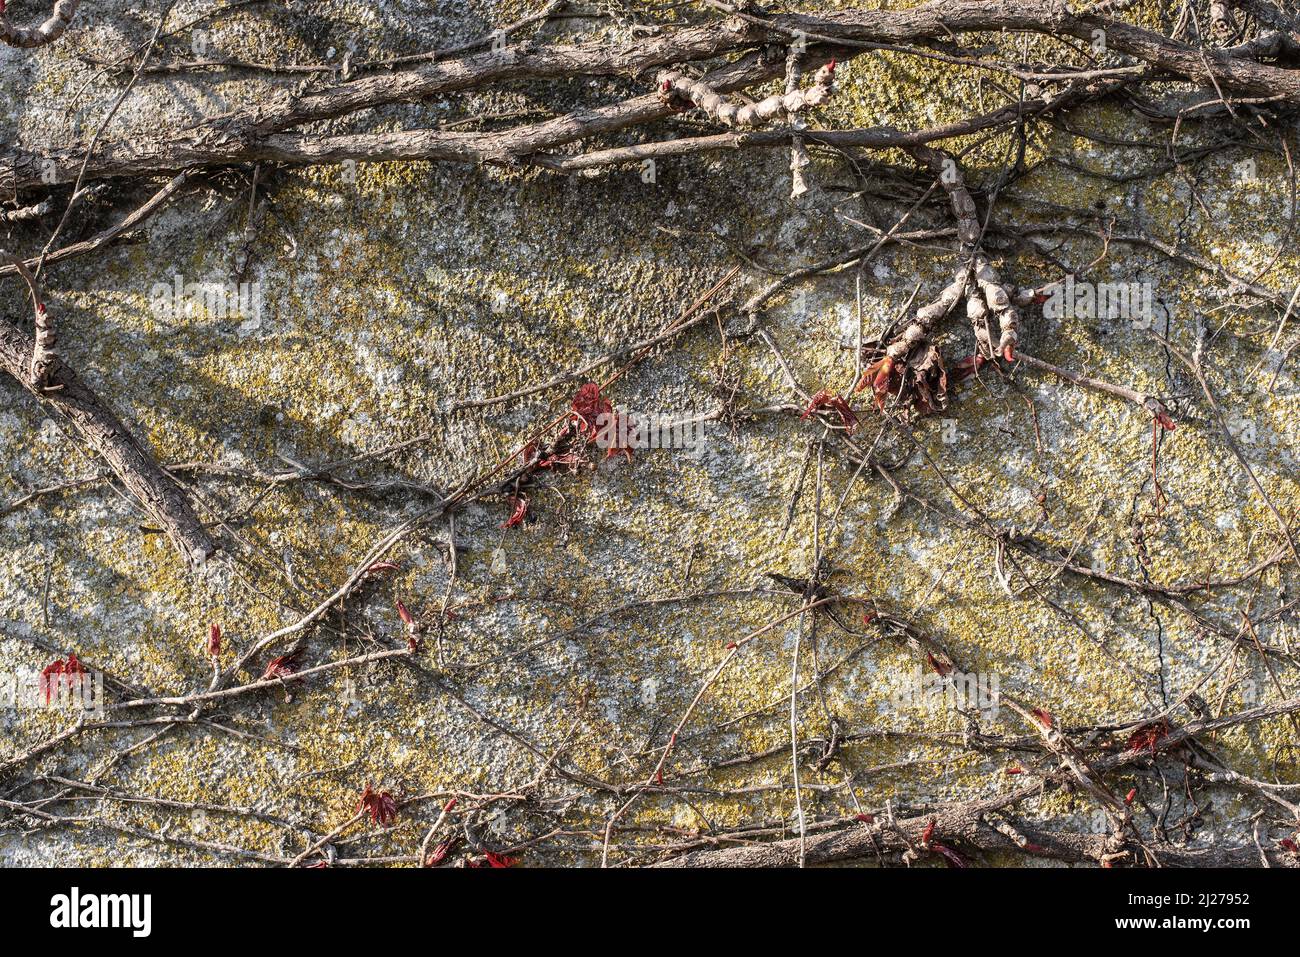 hojas rojas frescas y brotes de hojas en una planta de vid que se alaba en una pared de hormigón Foto de stock